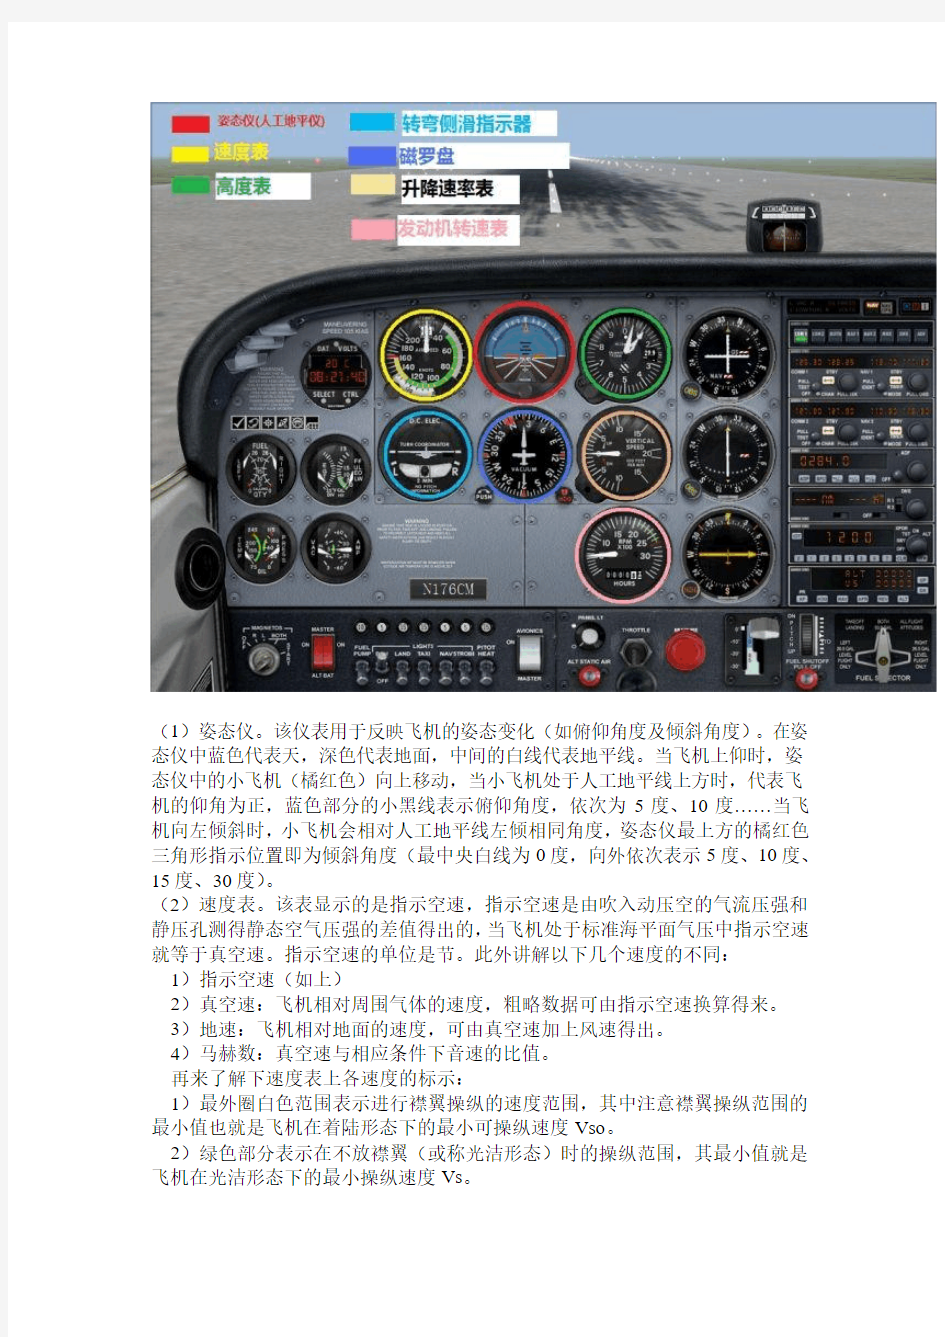 模拟飞行基础教程(飞机仪表盘)